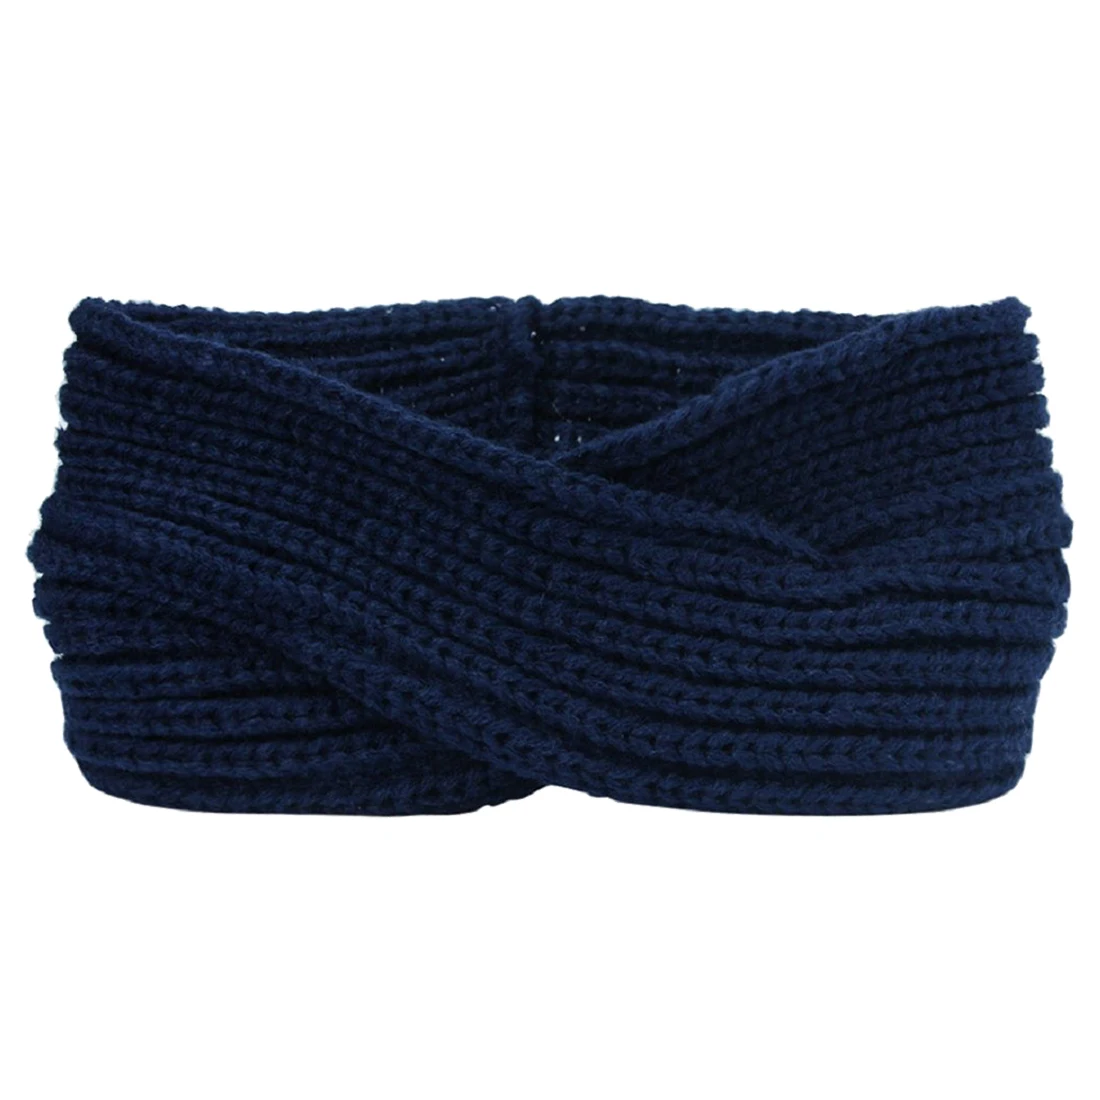 Ашион простой стиль головной убор леди хлопок впитывает пот Йога эластичная повязка популярные женские яркие цвета спортивные ободки головная повязка - Цвет: Синий